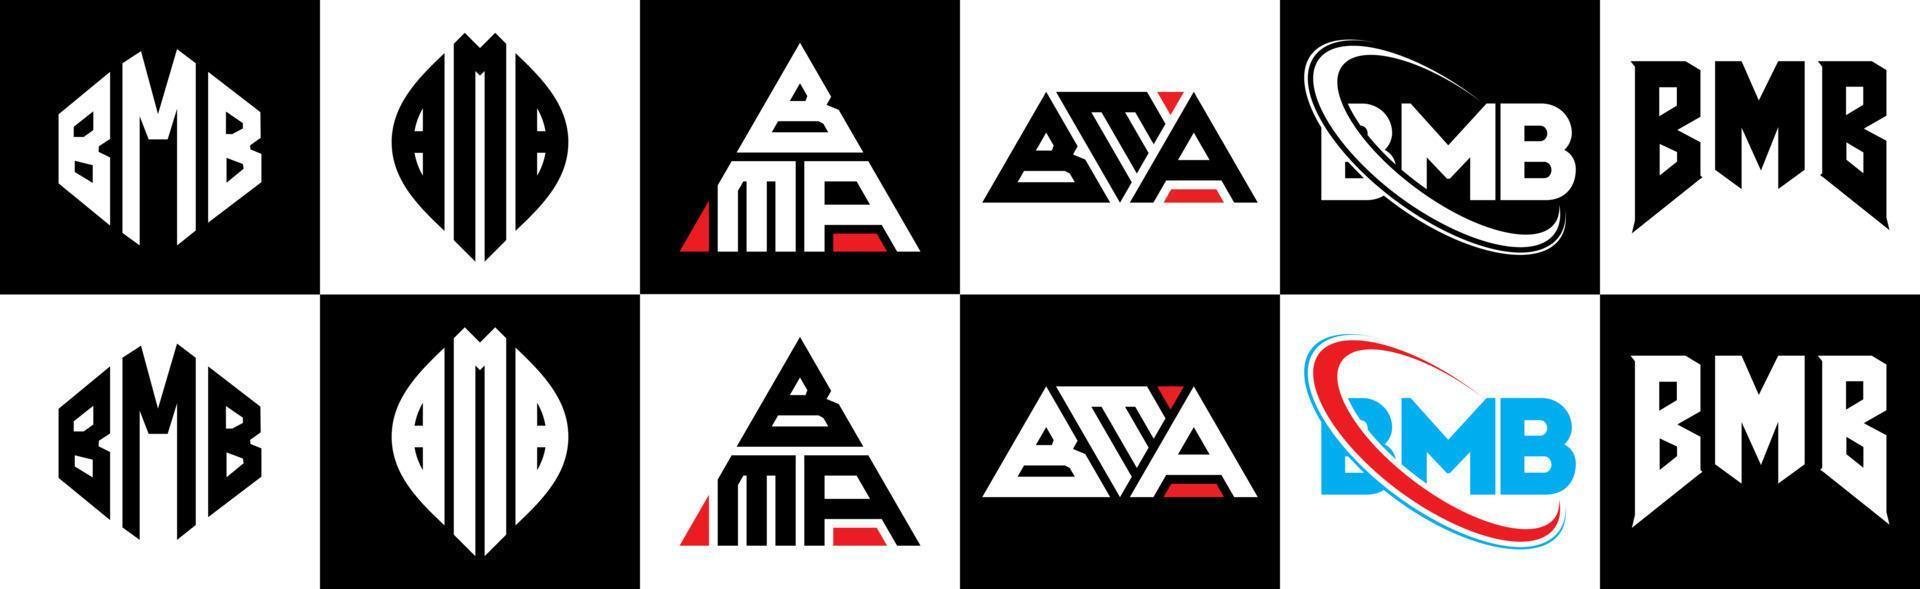 Bmb-Buchstaben-Logo-Design in sechs Stilen. bmb polygon, kreis, dreieck, sechseck, flacher und einfacher stil mit schwarz-weißem buchstabenlogo in einer zeichenfläche. Bmb minimalistisches und klassisches Logo vektor